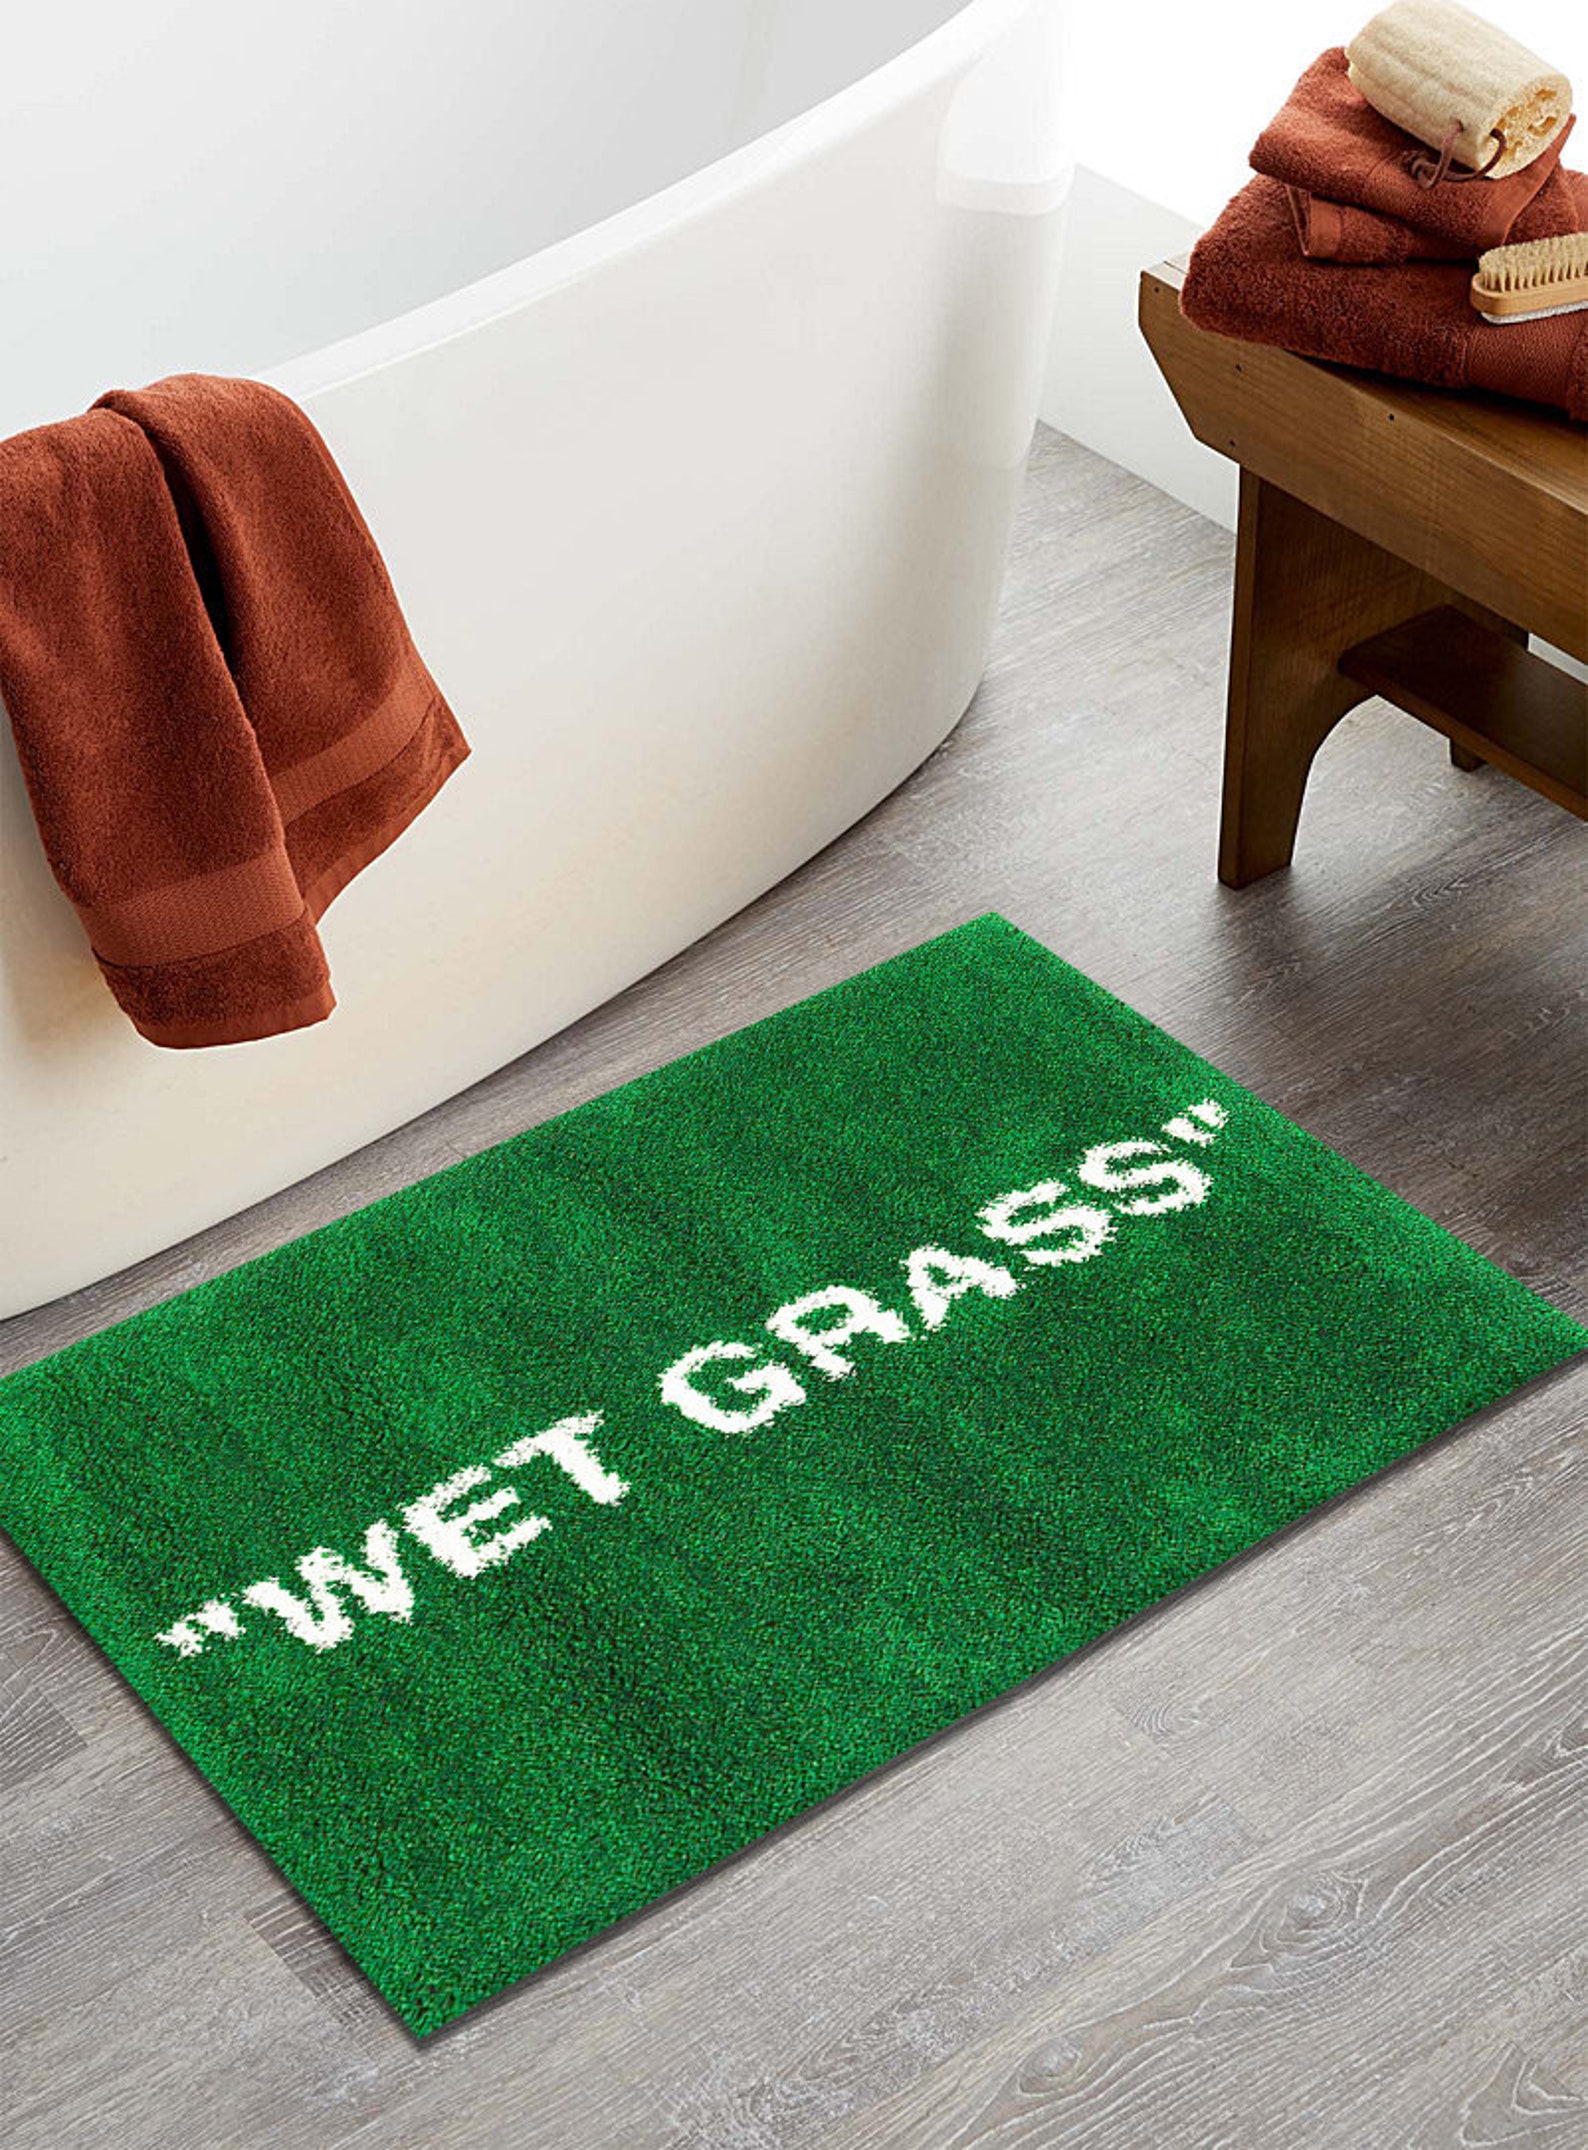 Wet Grass // Bath Mat // House Warming // Wedding Present // - Etsy